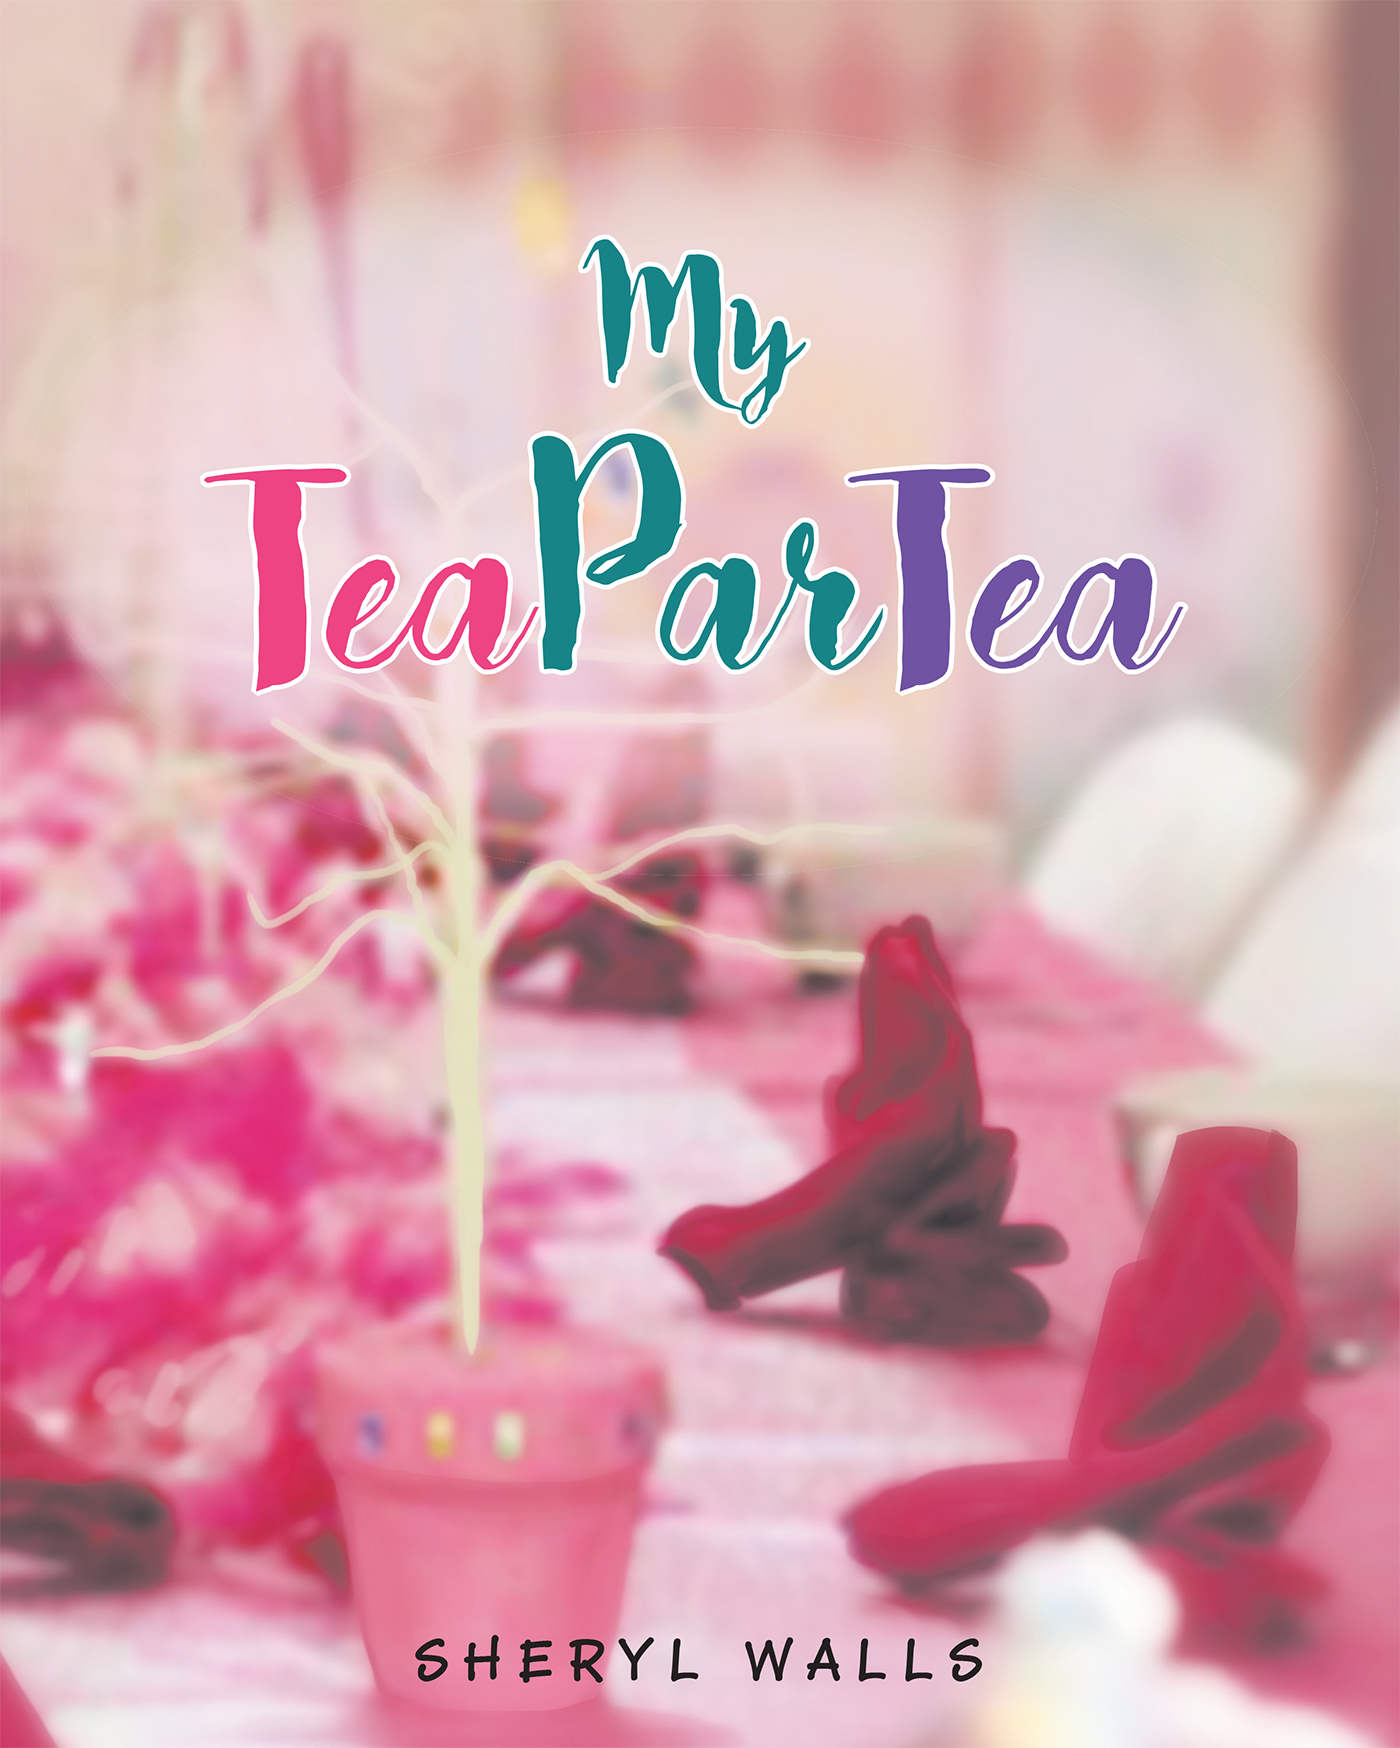 TeaParTea Cover Image